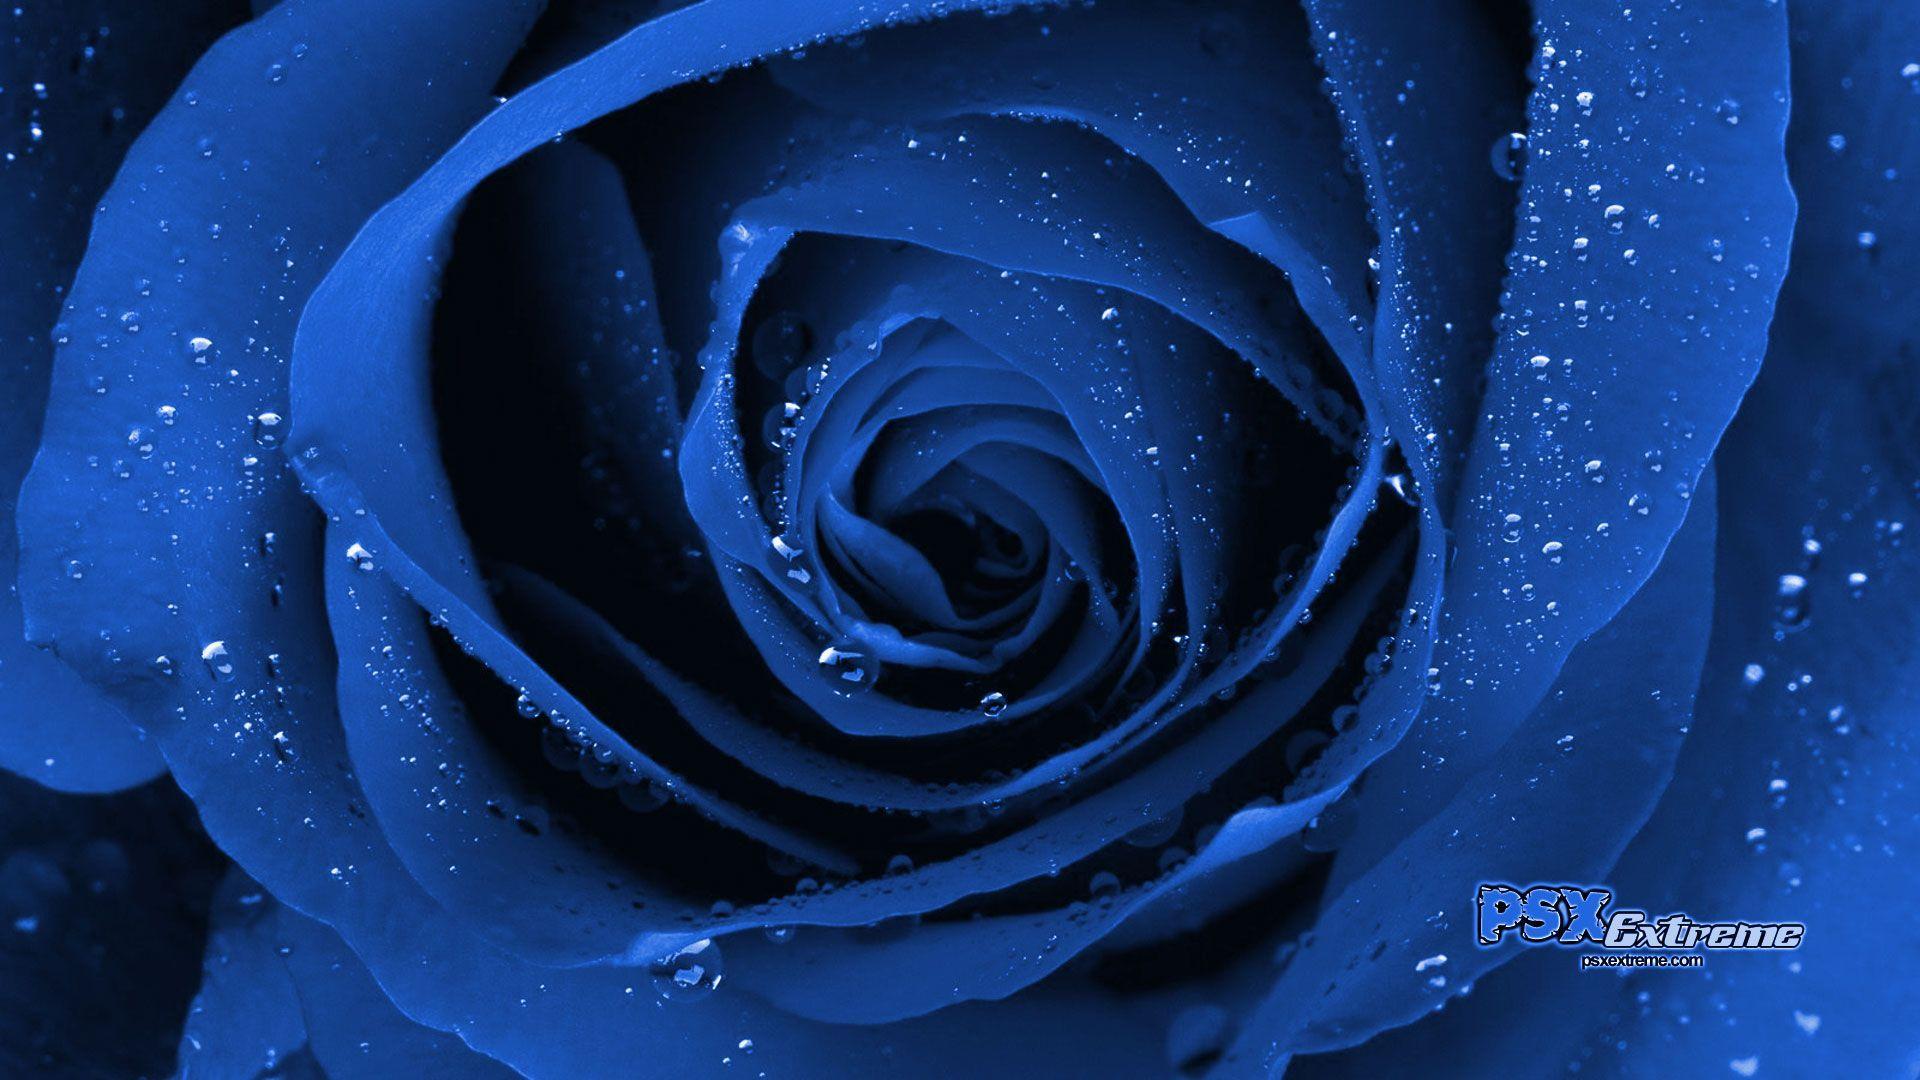 Wallpaper For > Blue Rose Wallpaper For Desktop